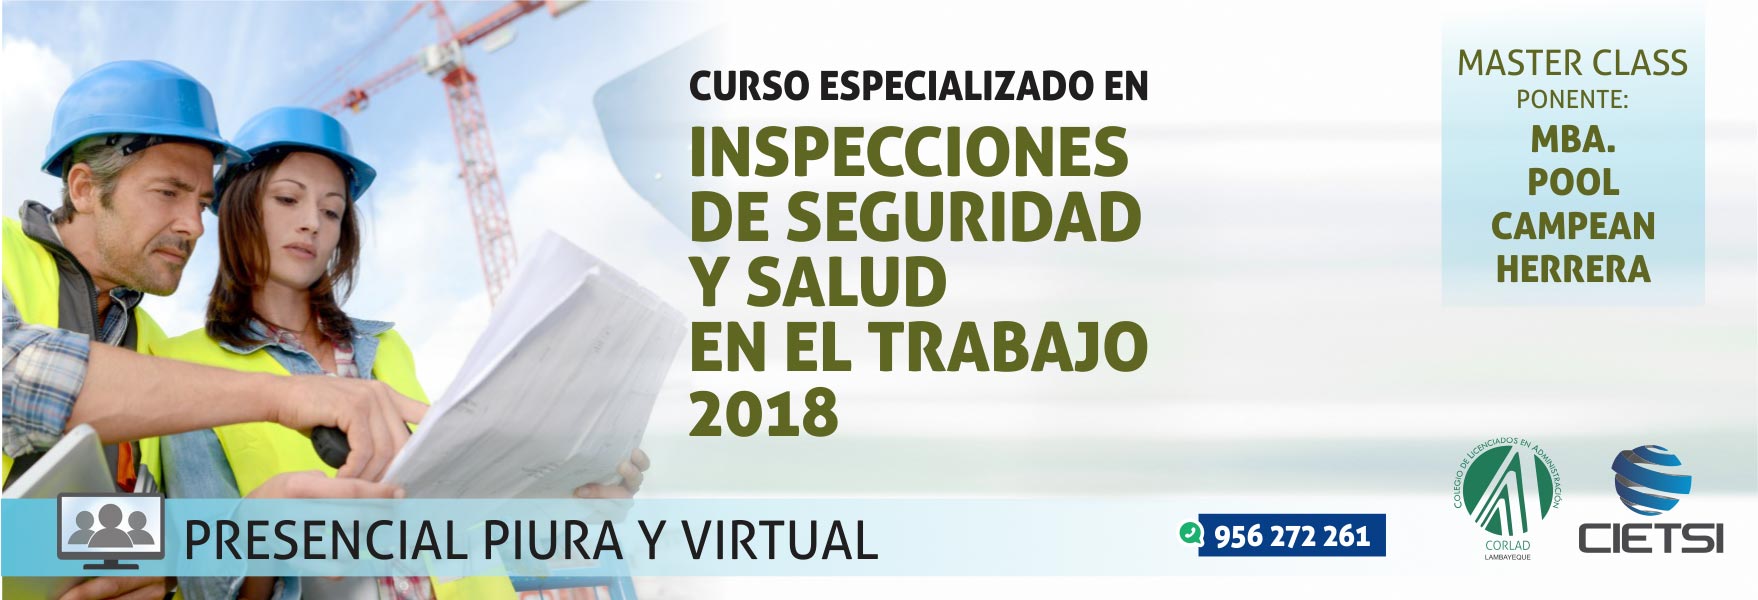 Curso Especializado Inspecciones De Seguridad Y Salud En El Trabajo 2018 2954